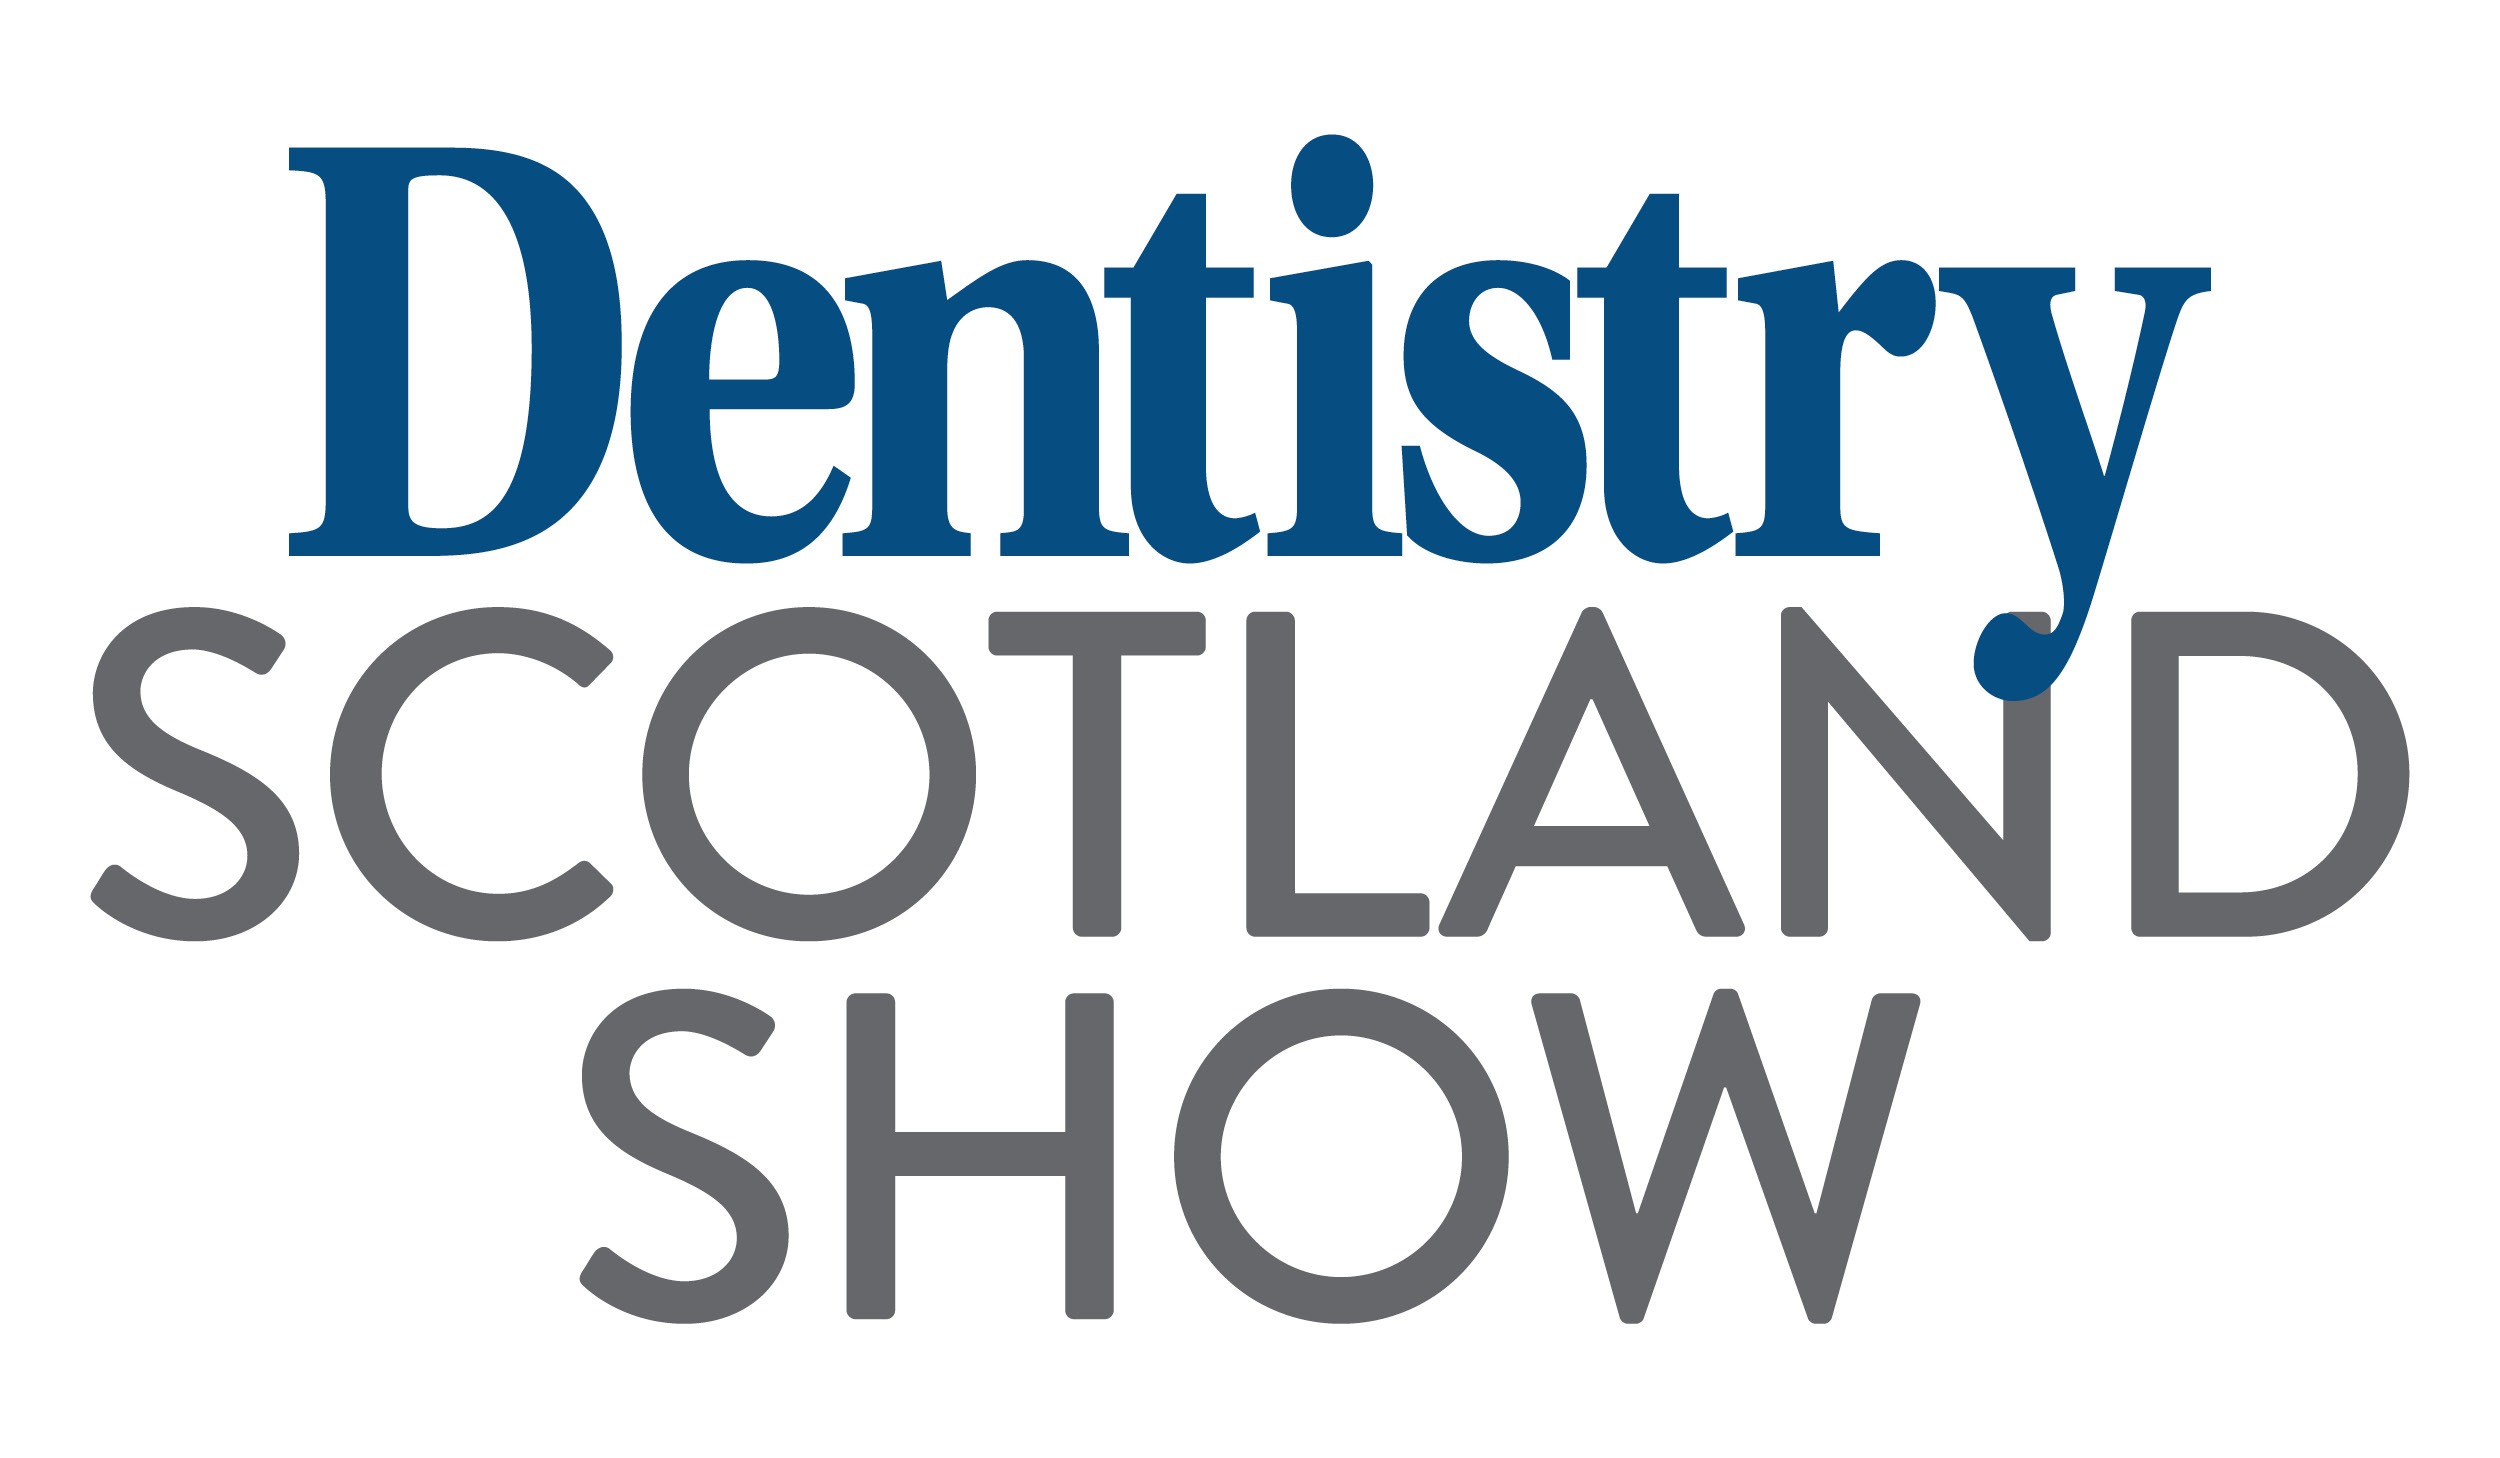 Dentistry Scotland Show